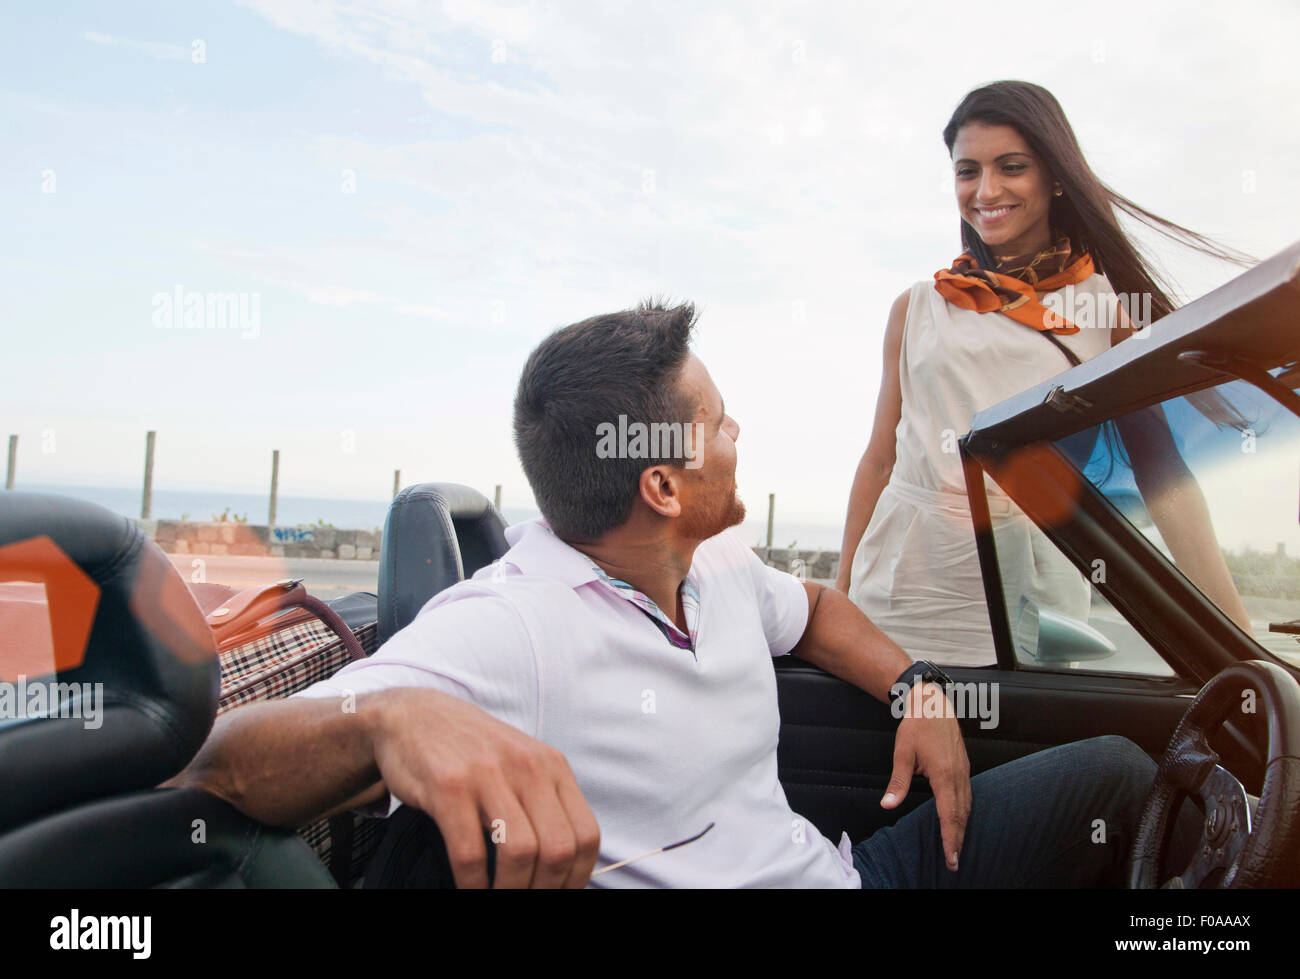 L'homme en voiture décapotable, femme debout à côté de voiture, smiling Banque D'Images